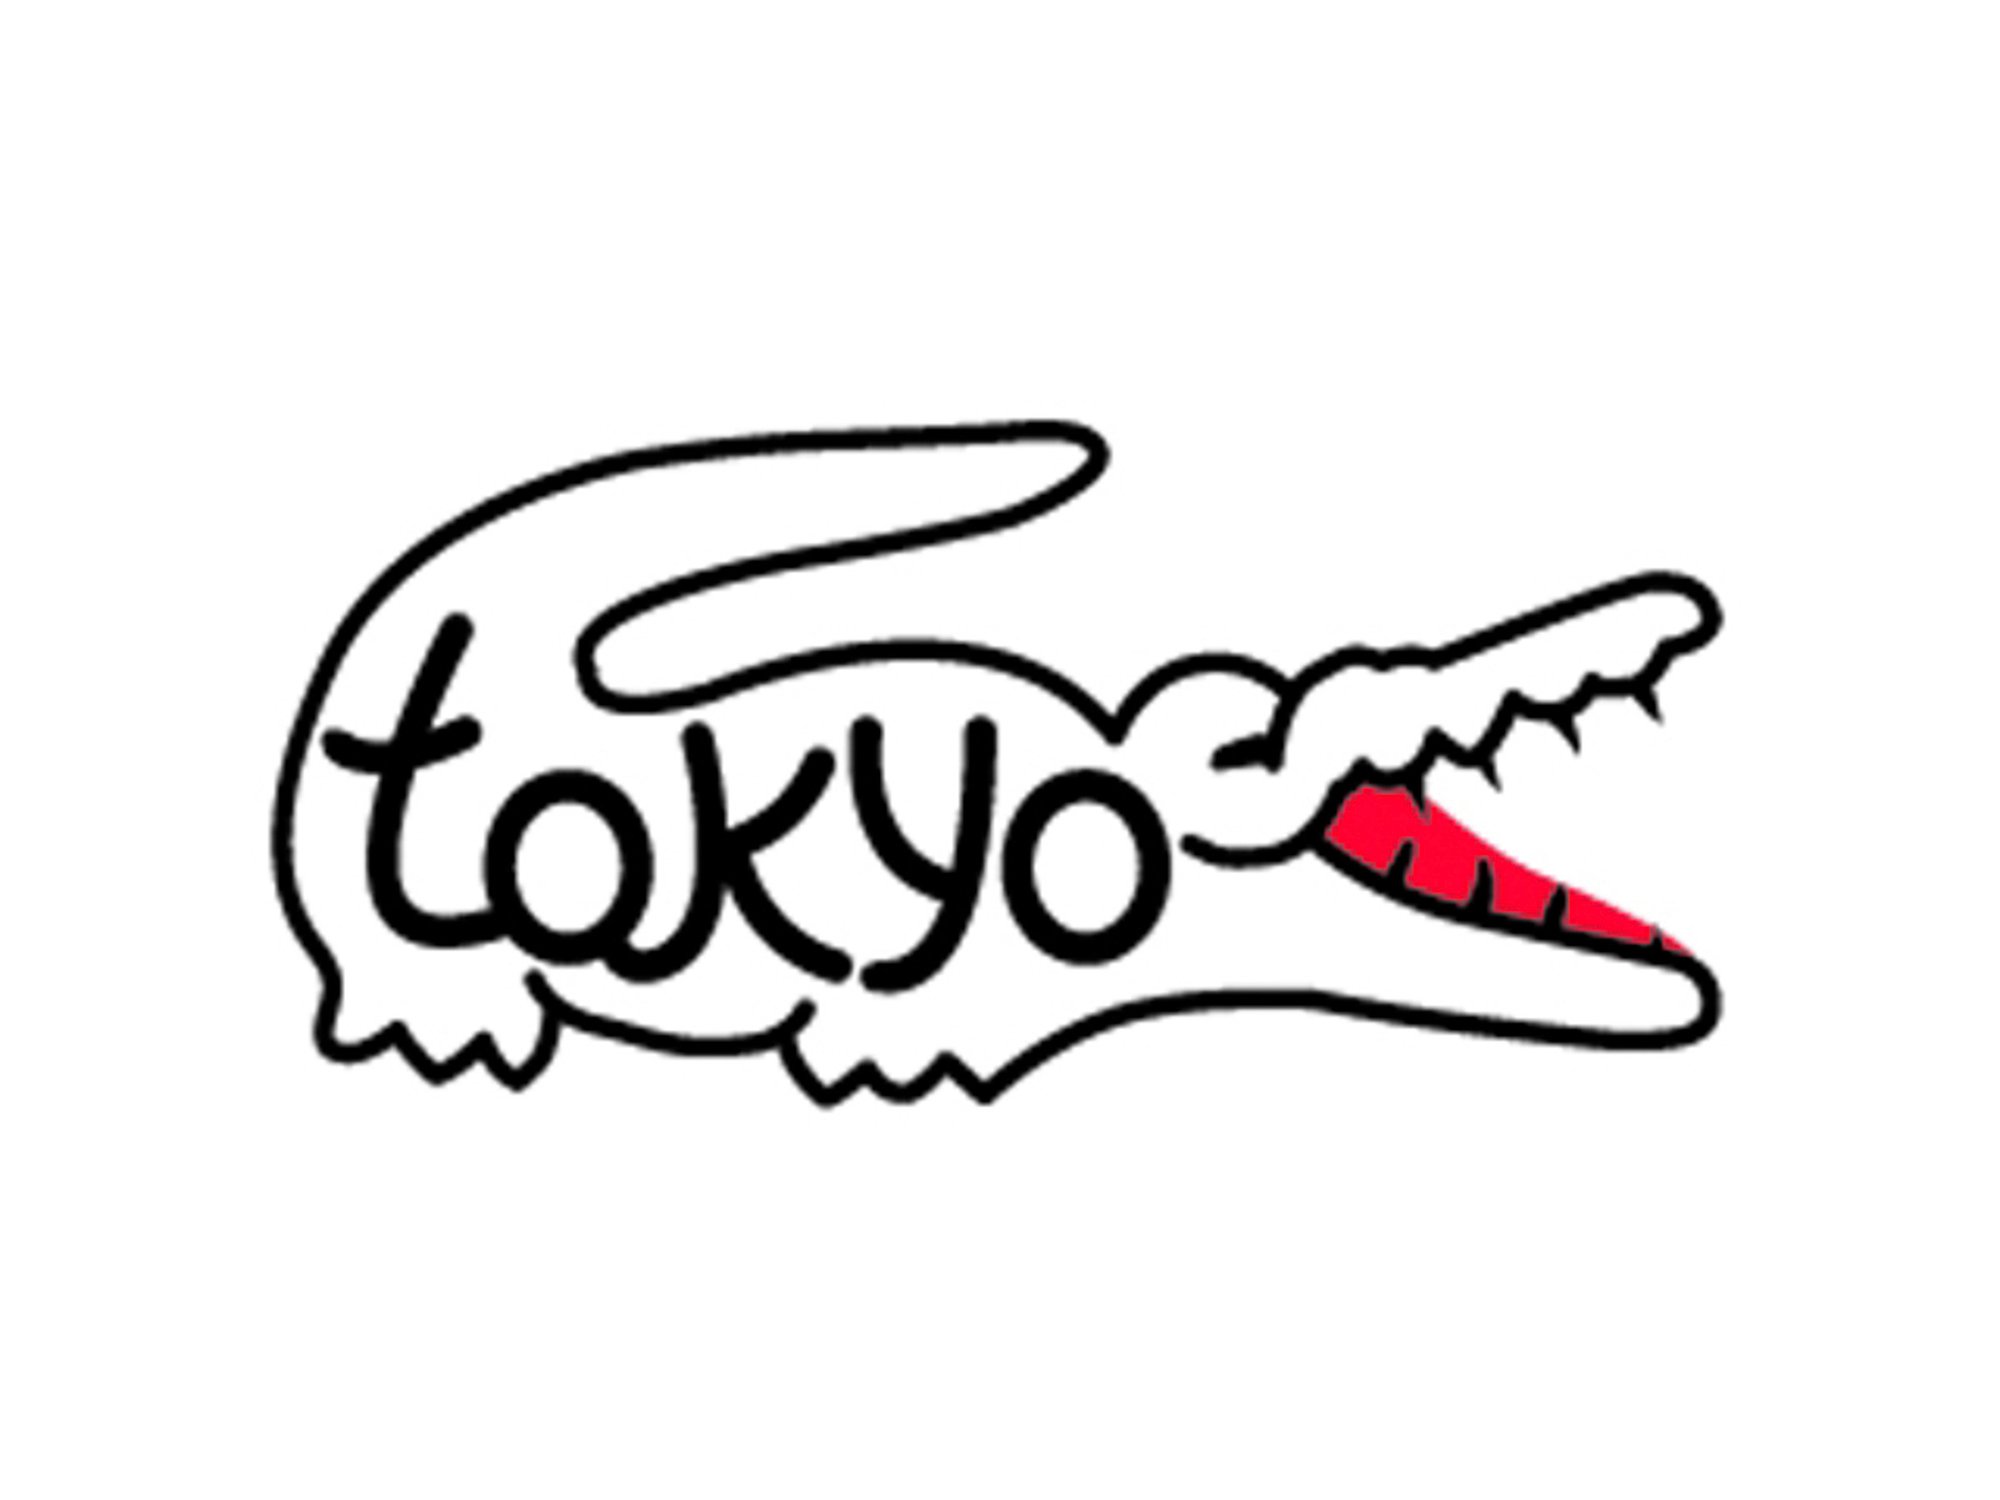 ラコステ渋谷店がリニューアルオープン 数量限定でワニマークに Tokyo が組み込まれたポロシャツ発売